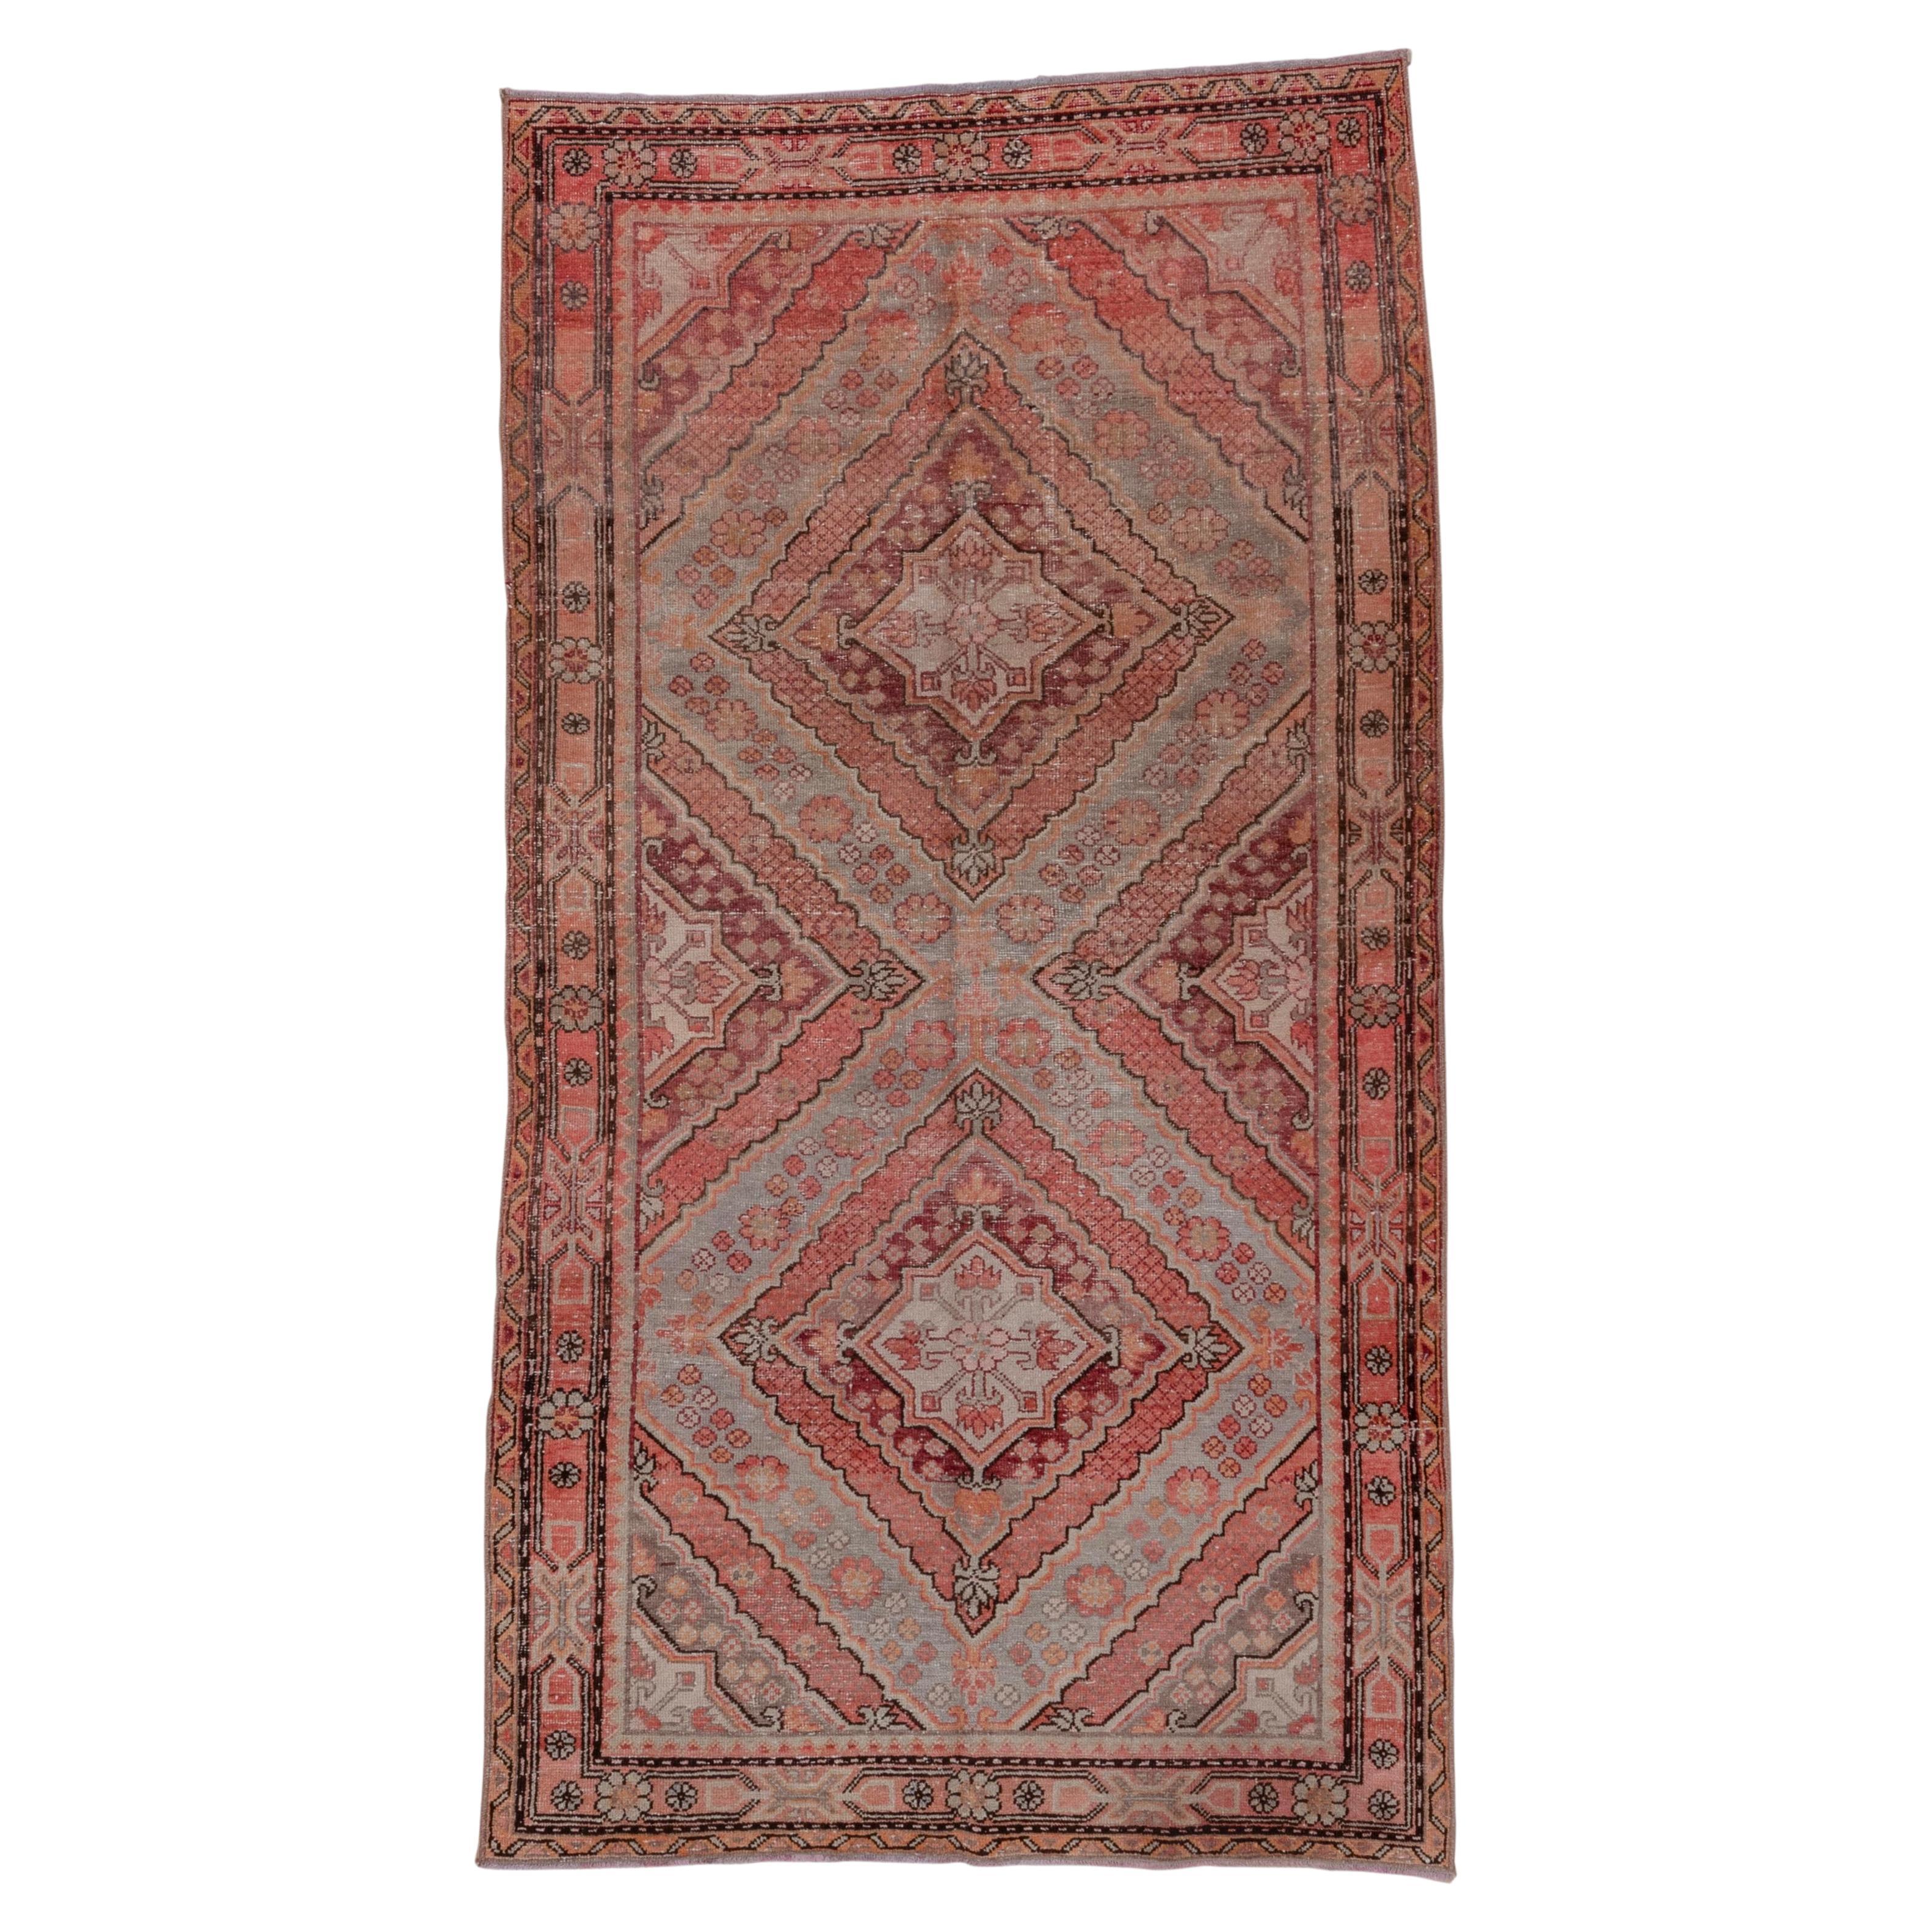 Antique Khotan Rug - Red Hues, Triangular Detailing For Sale